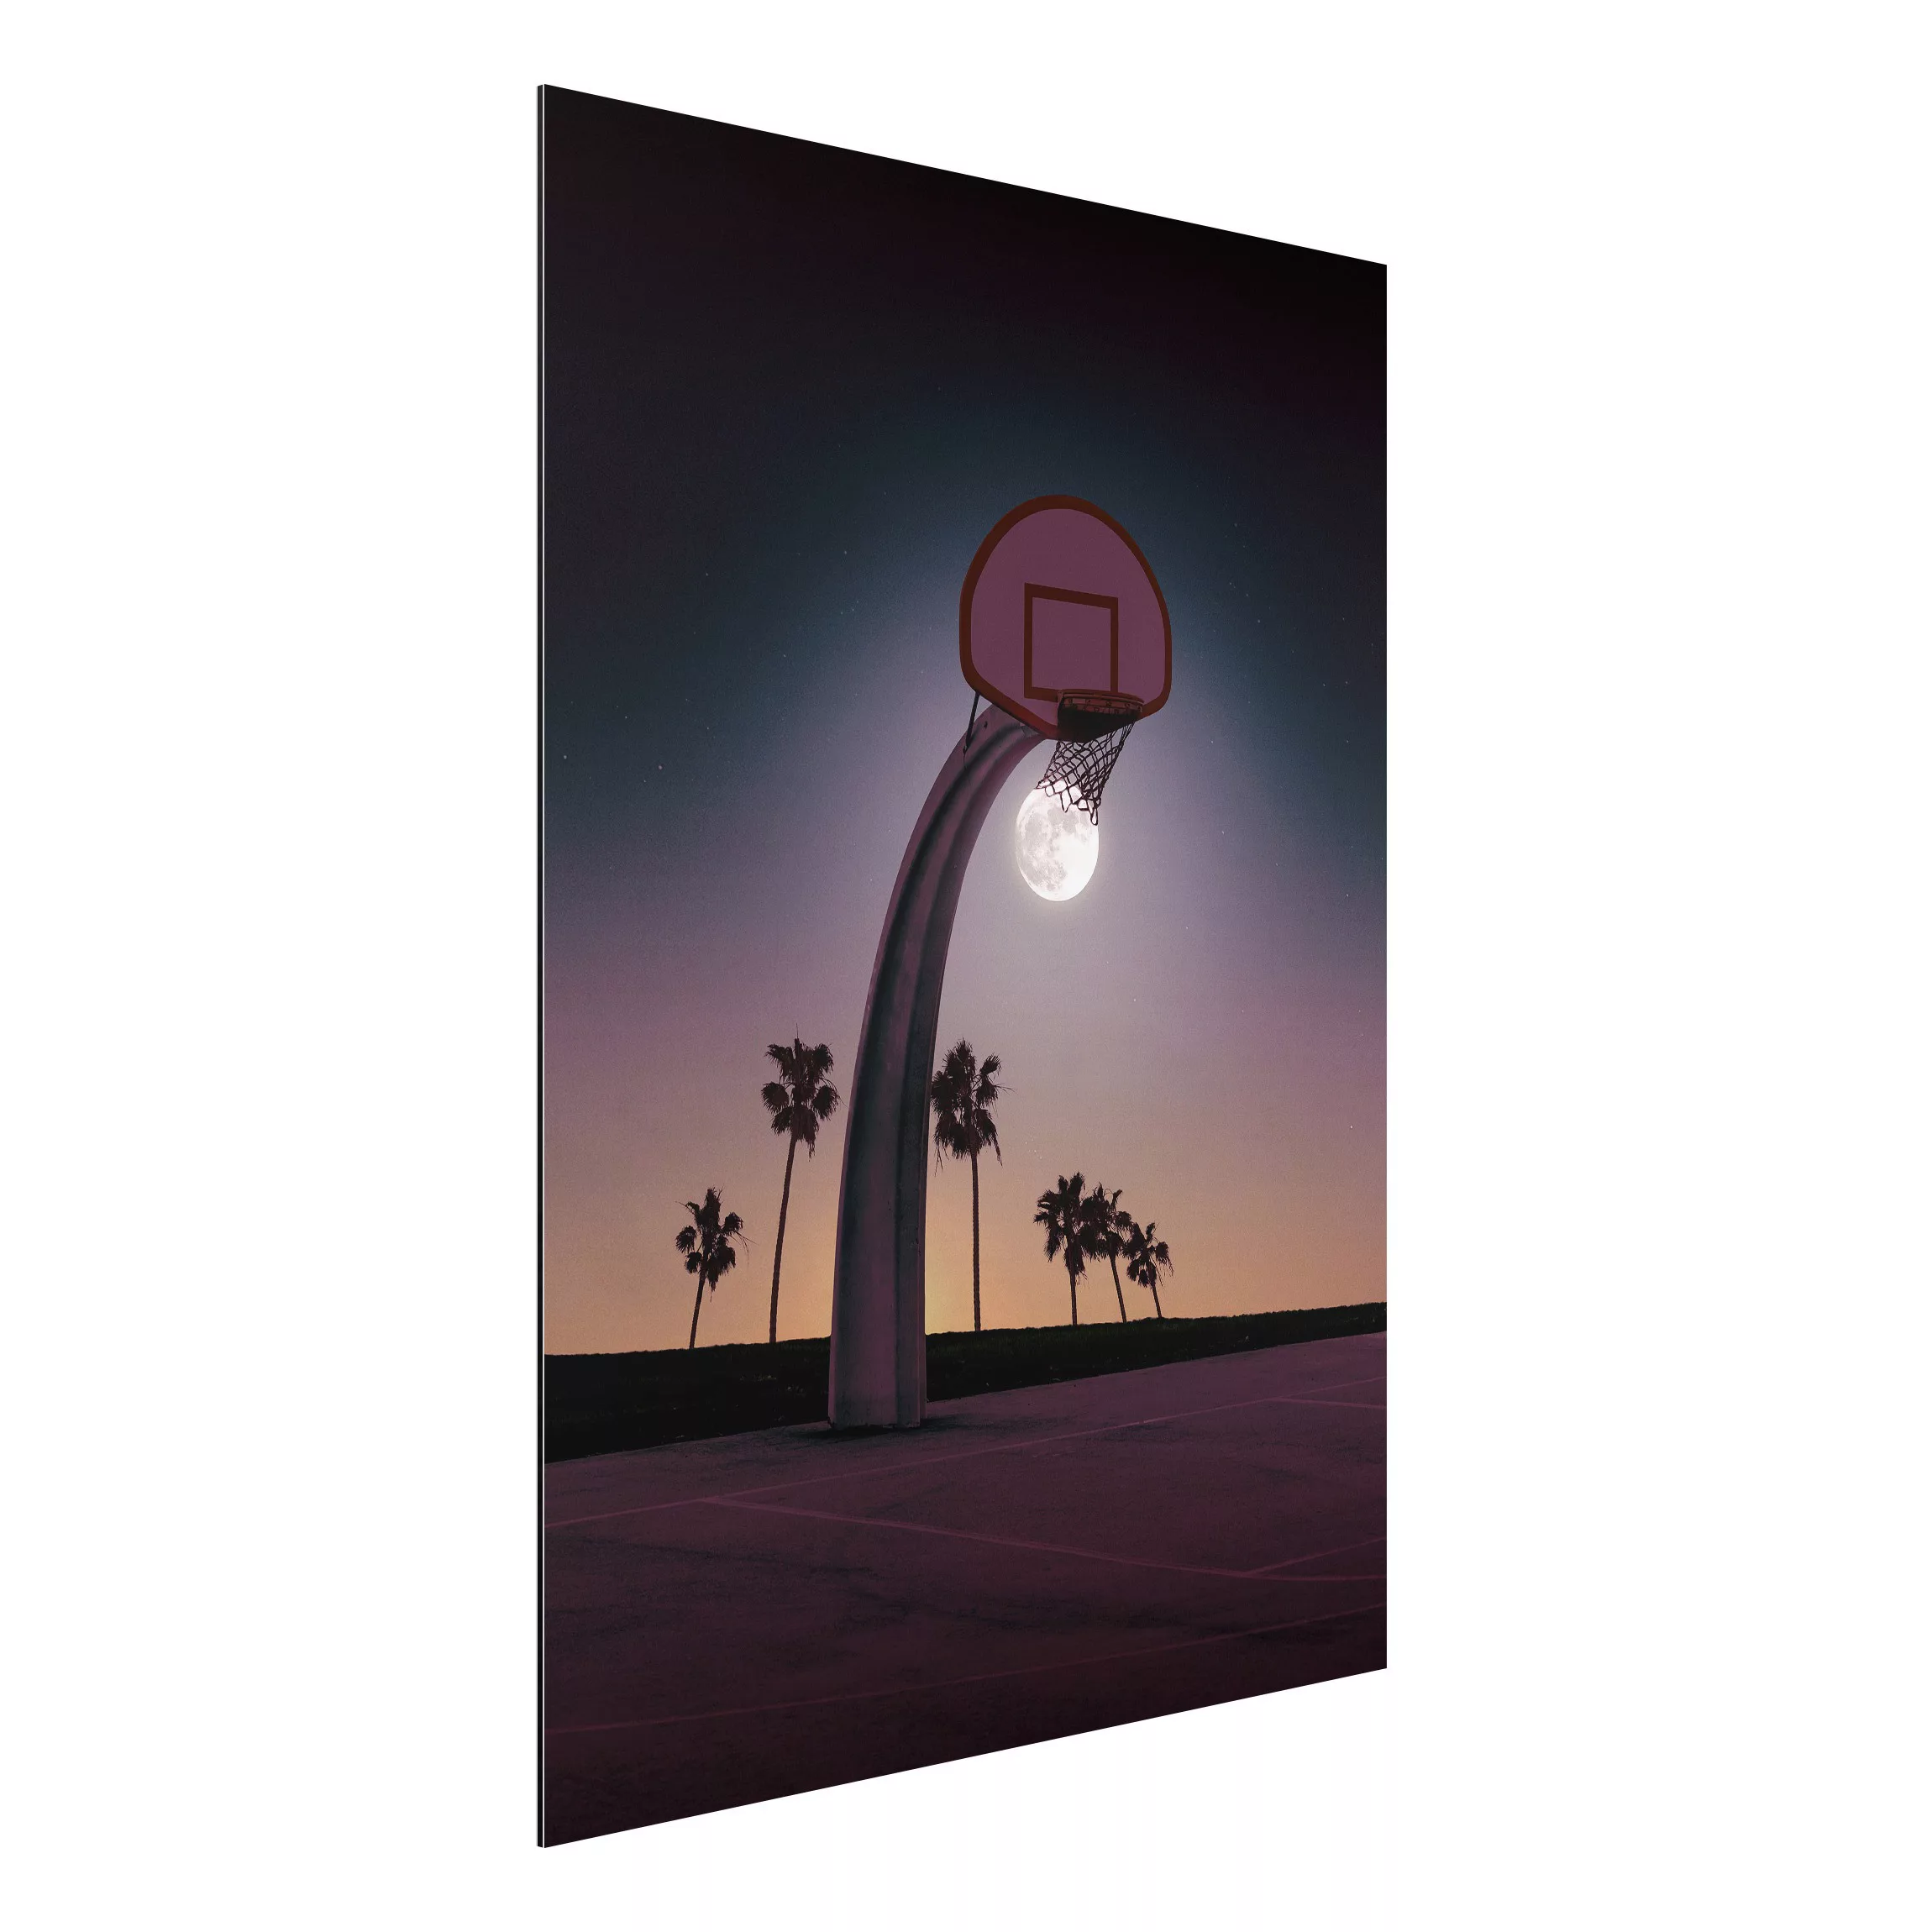 Alu-Dibond Bild Kunstdruck - Hochformat 3:4 Basketball mit Mond günstig online kaufen